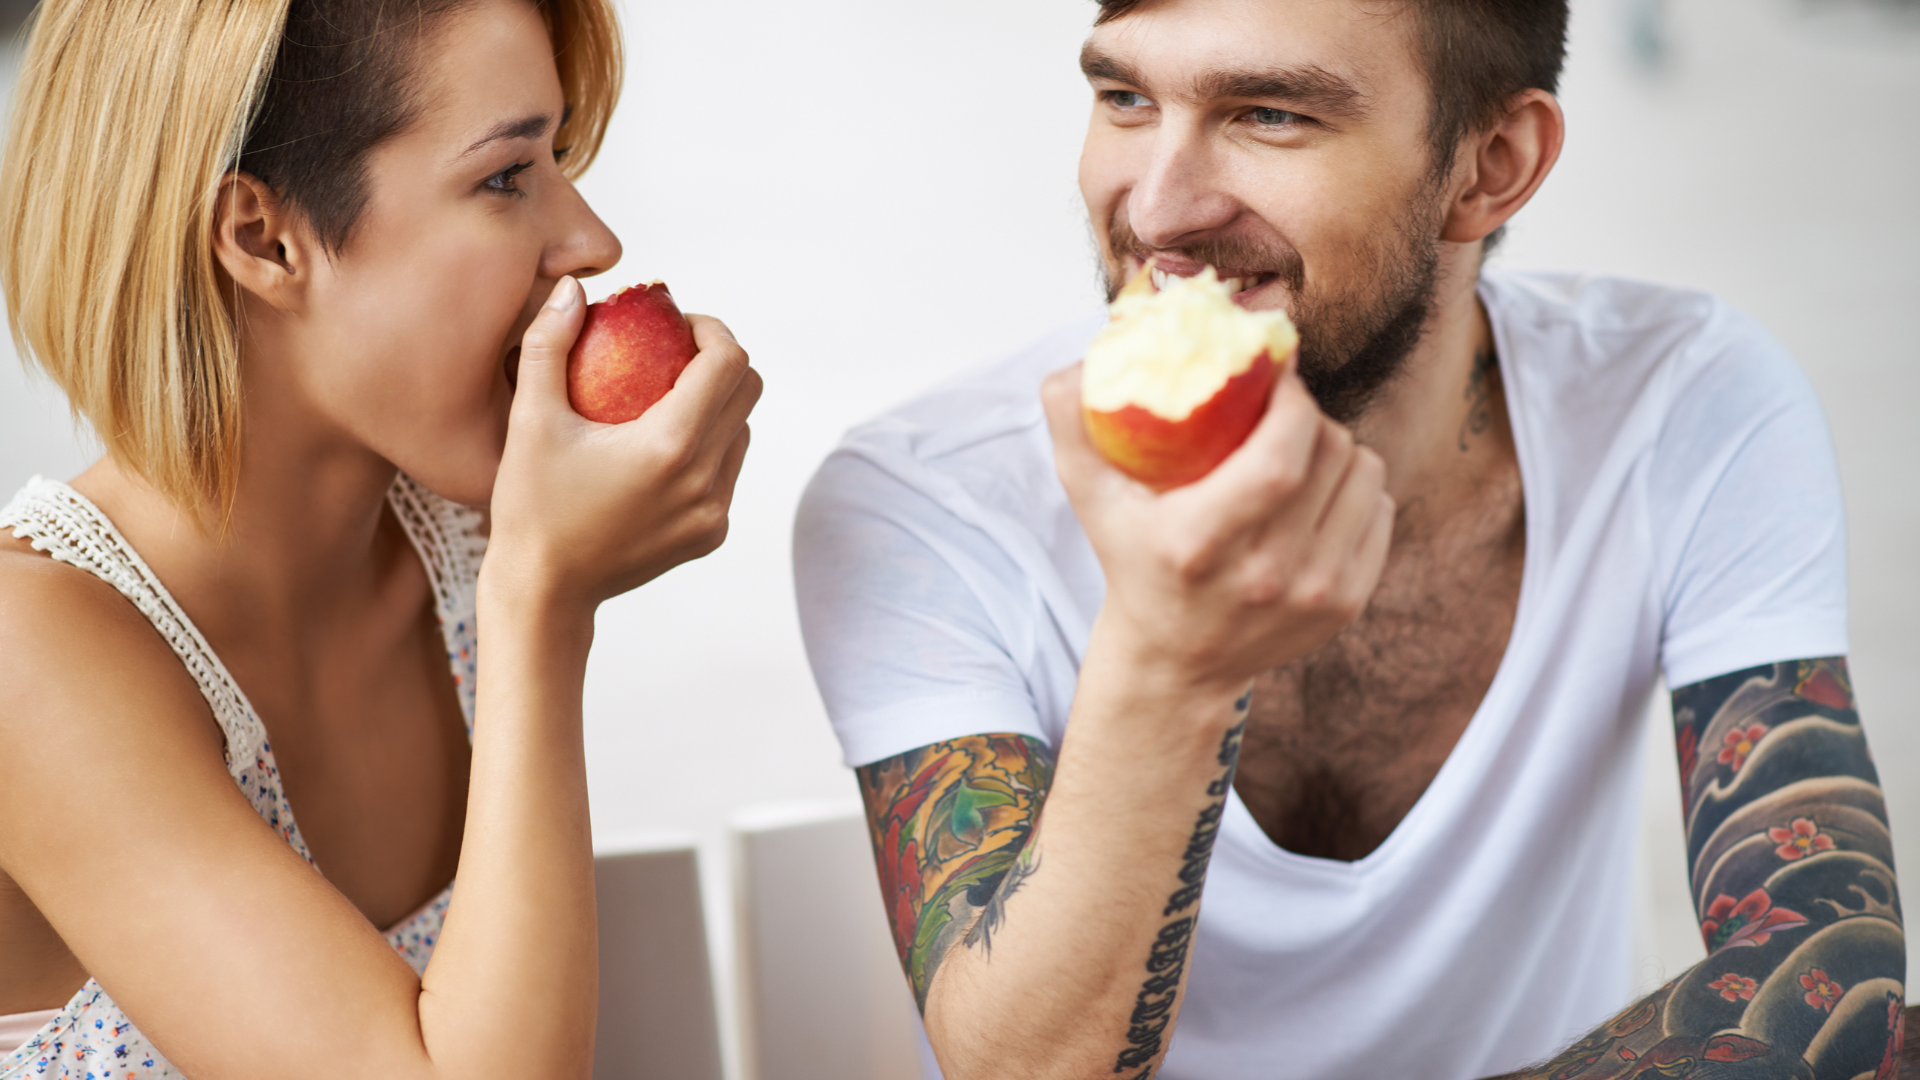 Pessoas que comem maçãs podem viver mais